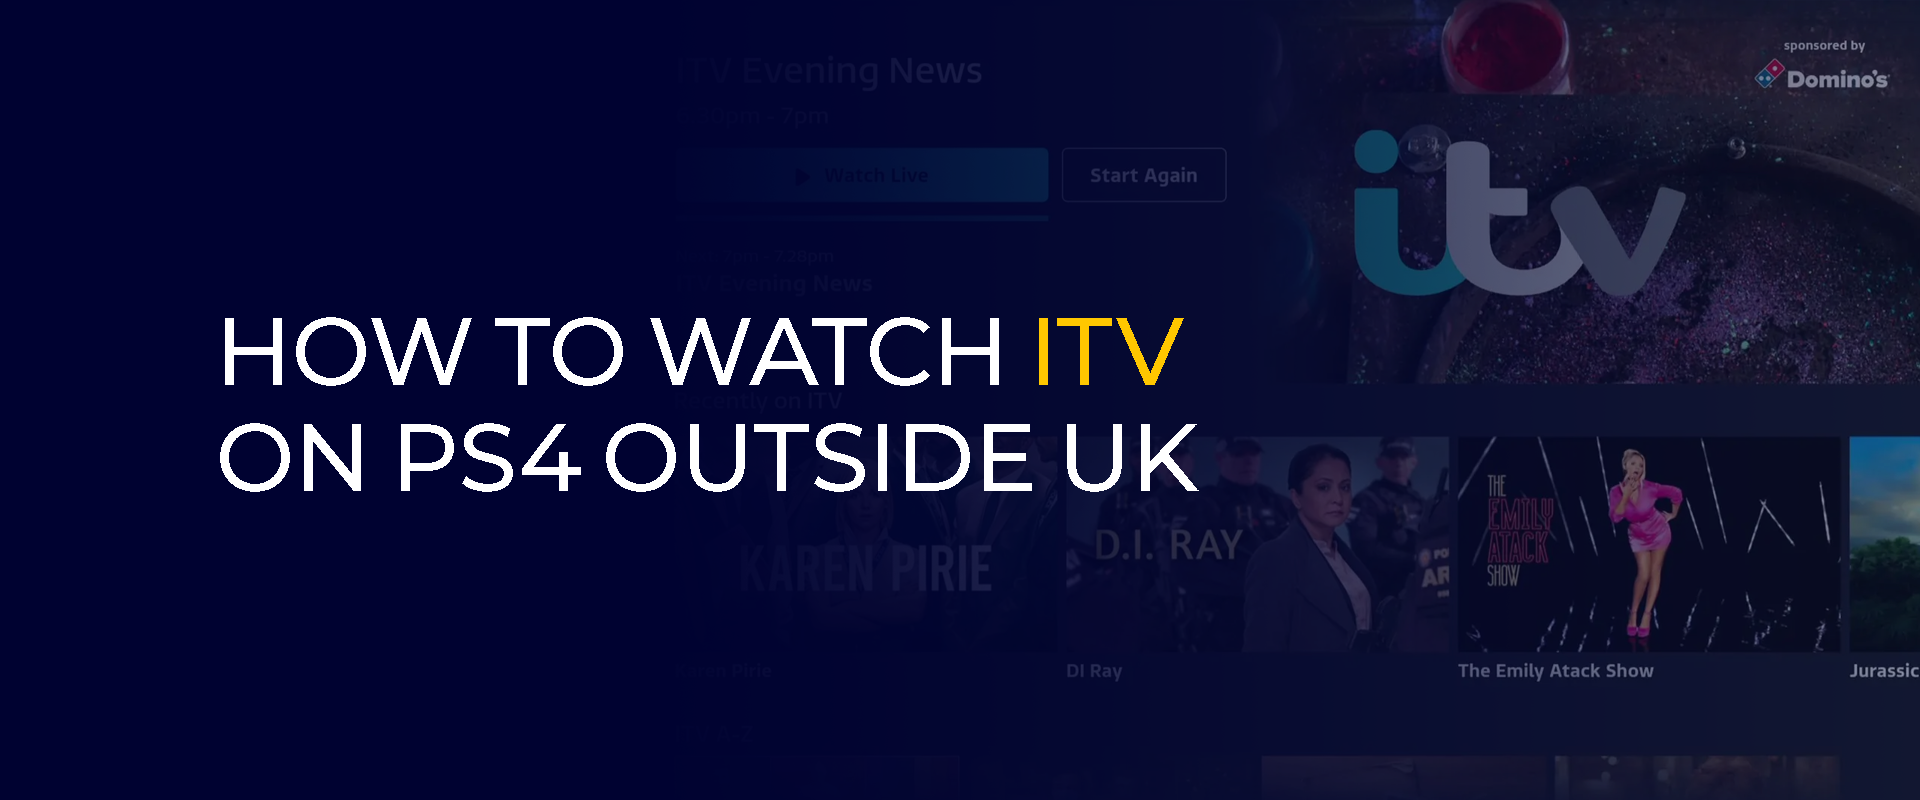 如何在英国境外通过 PS4 观看 ITV